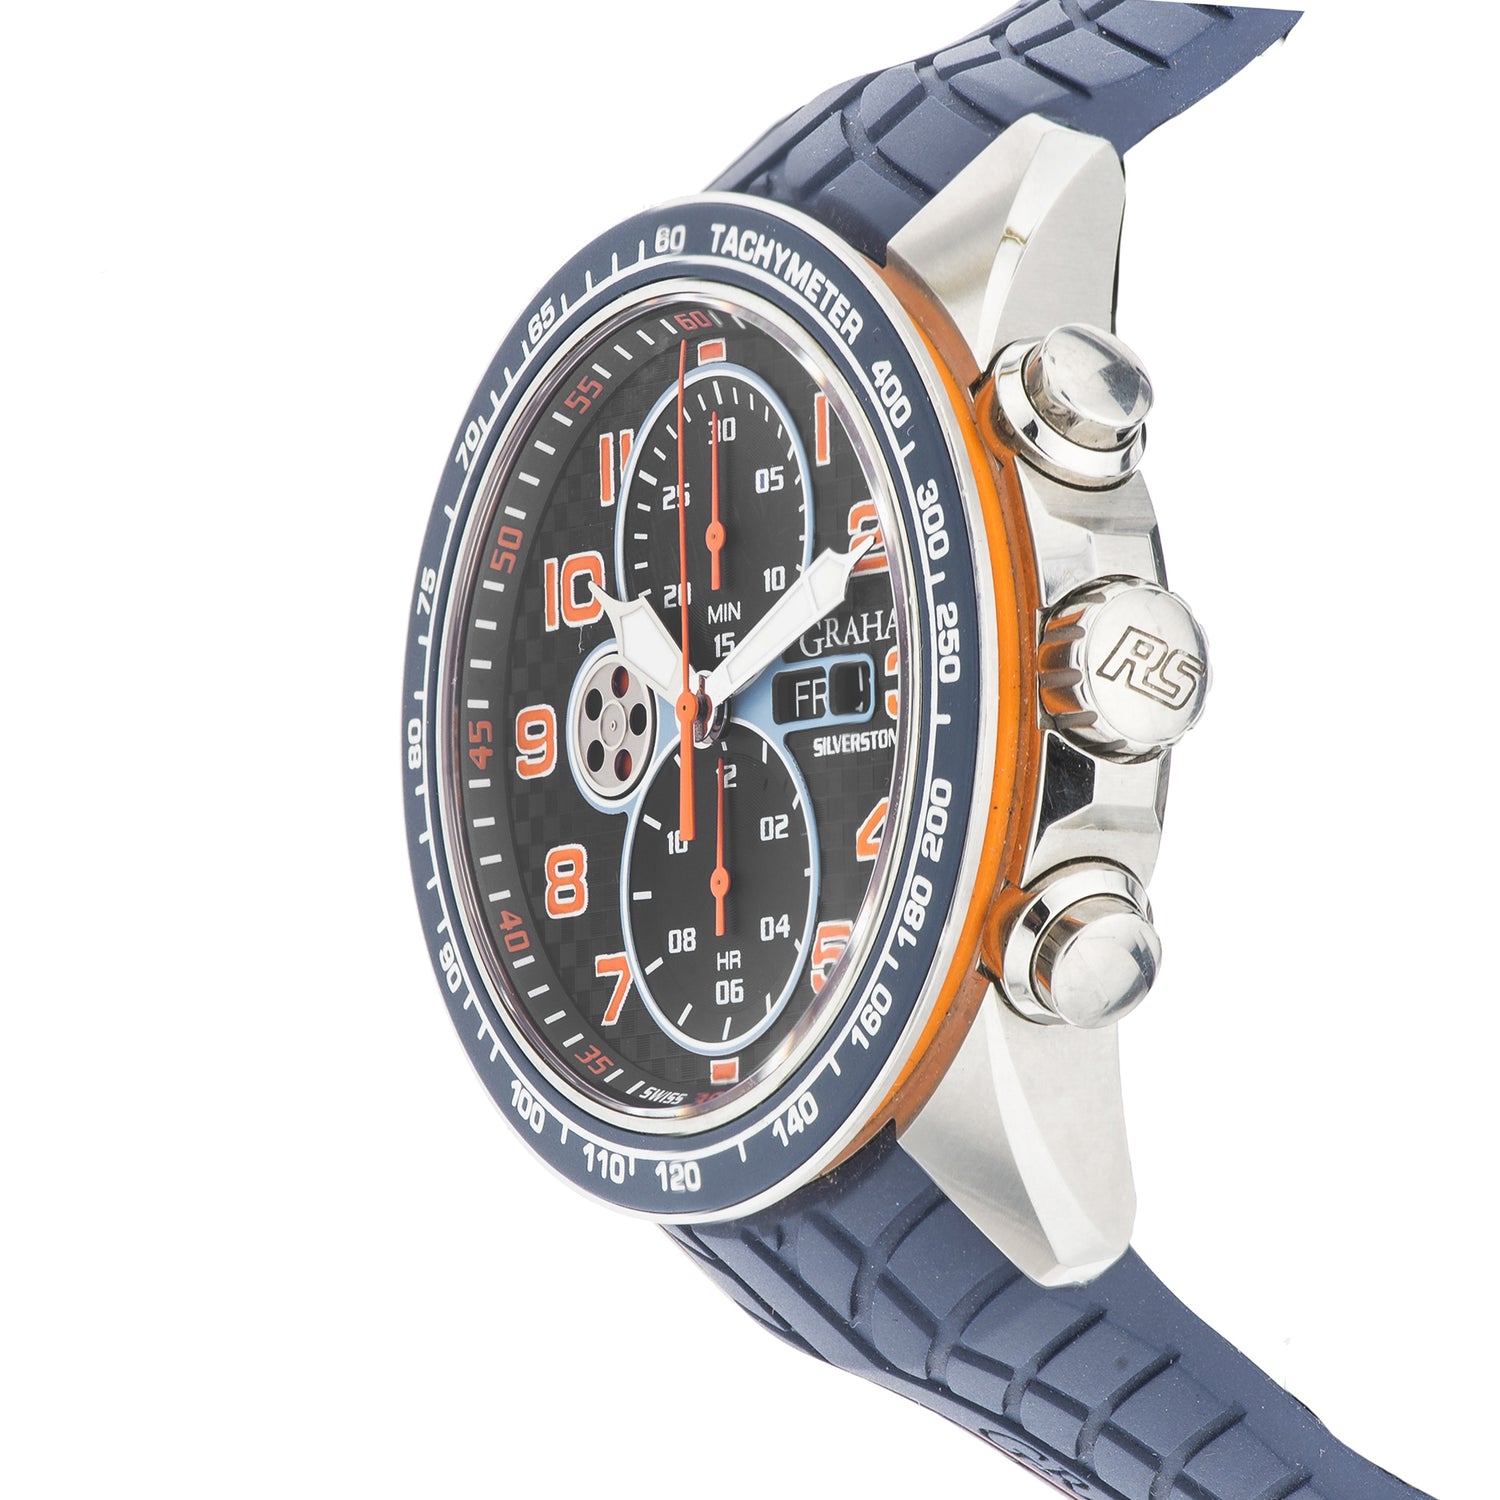 Reloj Graham Silverstone Chronograph RS Racing para Caballero 